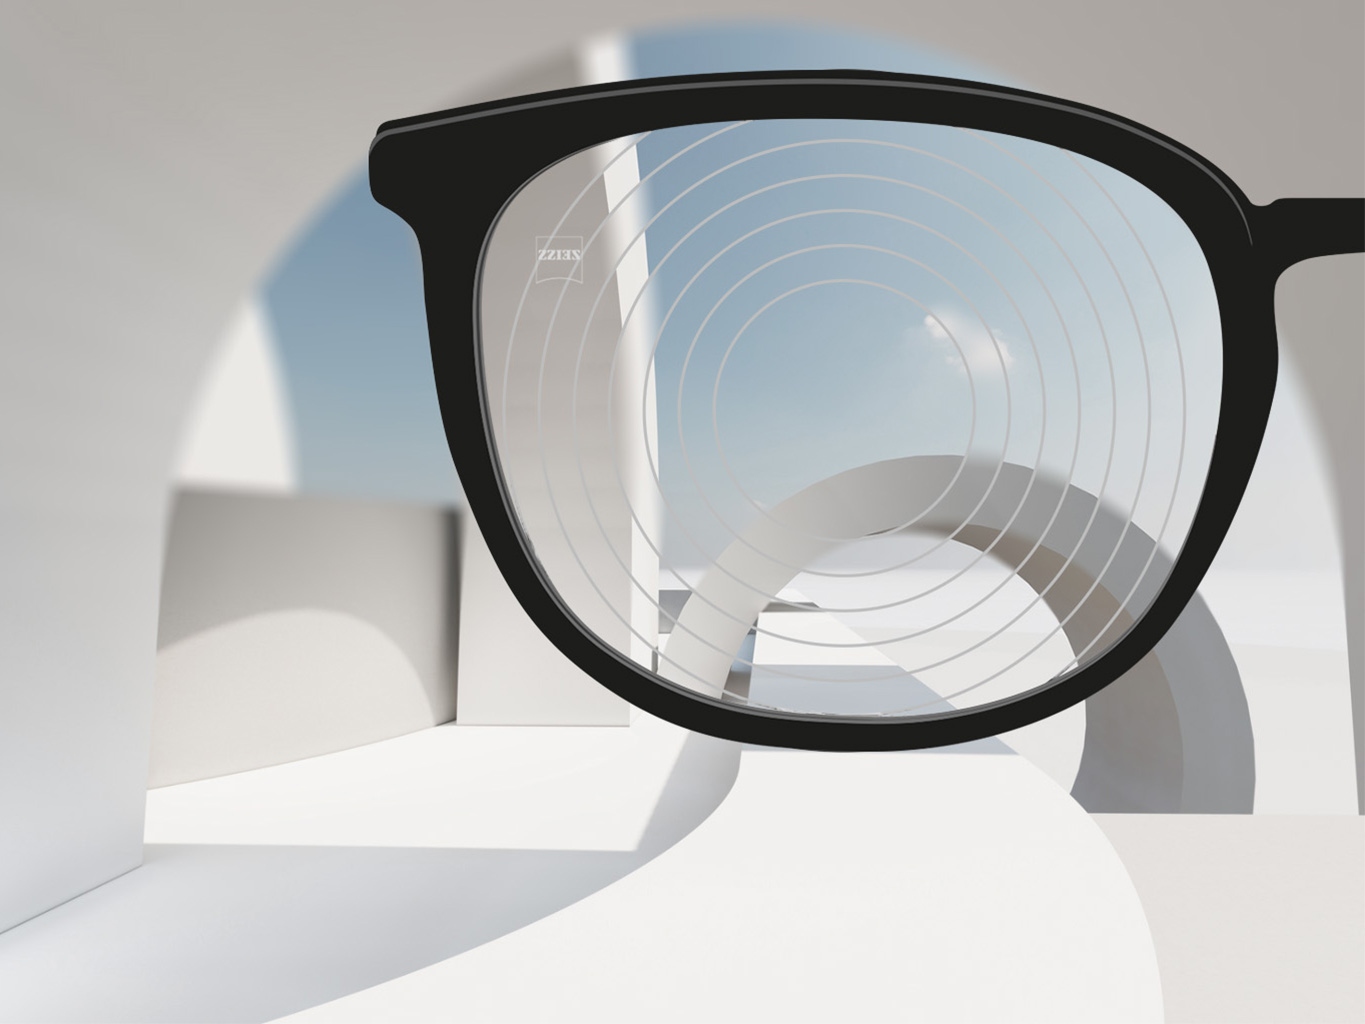 Közeli kép a ZEISS rövidlátást kezelő szemüveglencséiről, fekete szemüvegkerettel és koncentrikus körökkel a lencsék felületén.